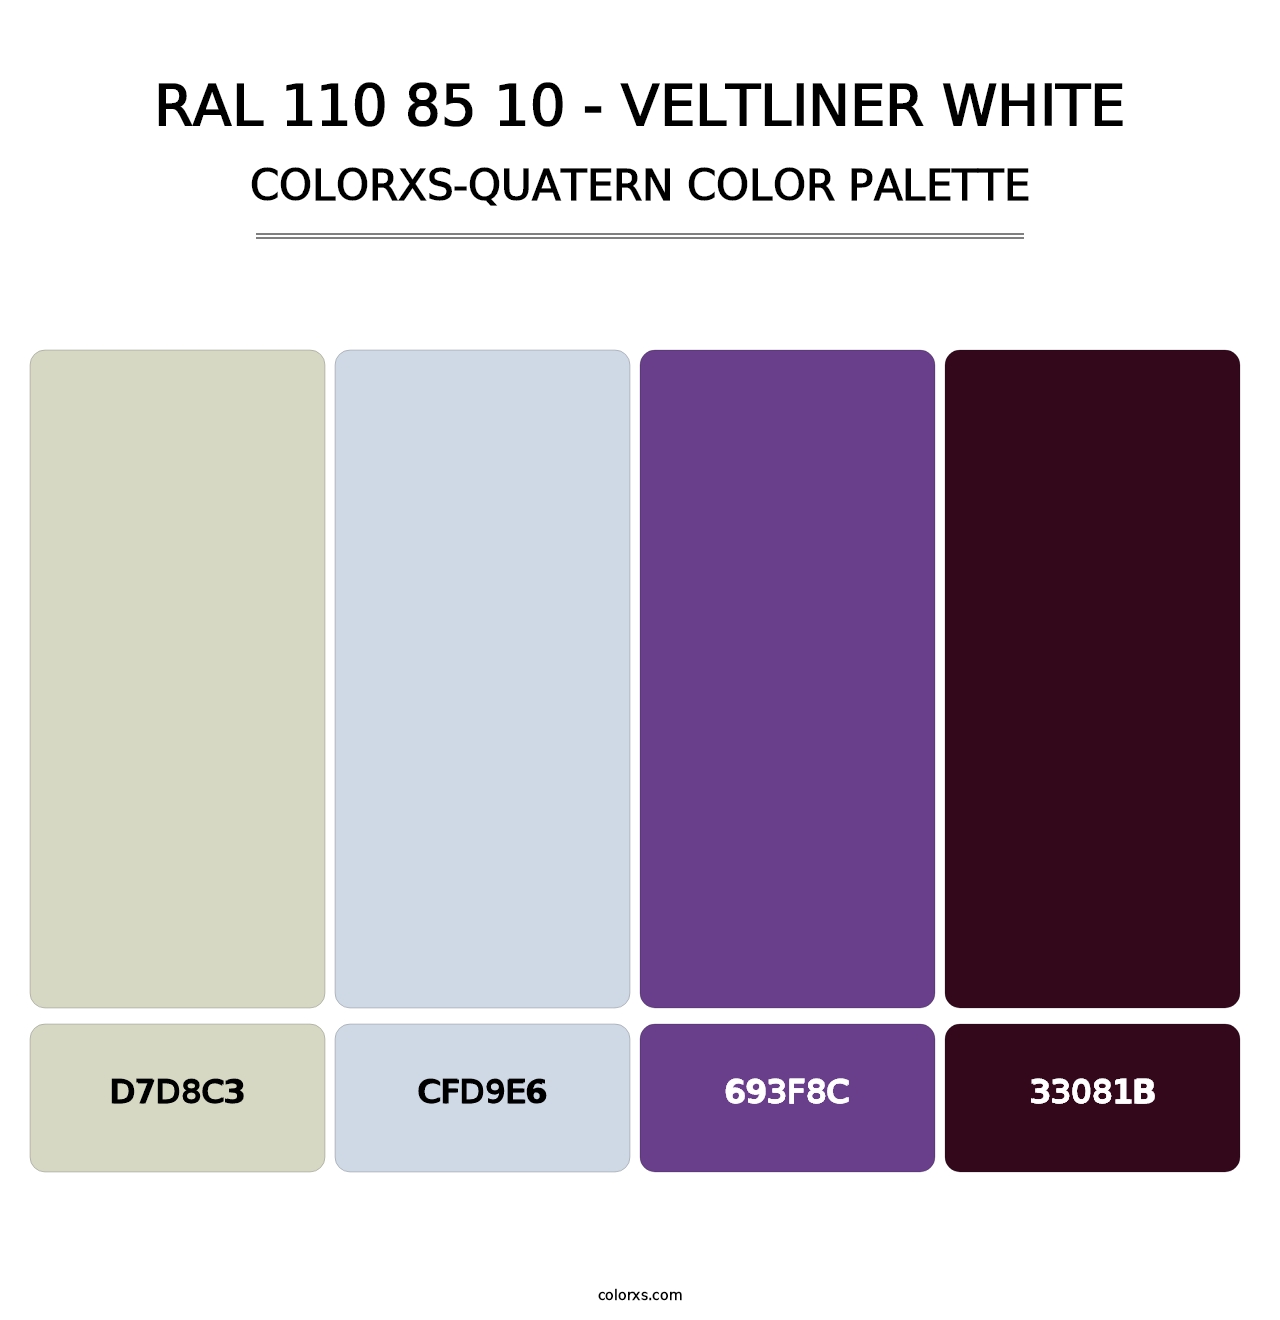 RAL 110 85 10 - Veltliner White - Colorxs Quatern Palette